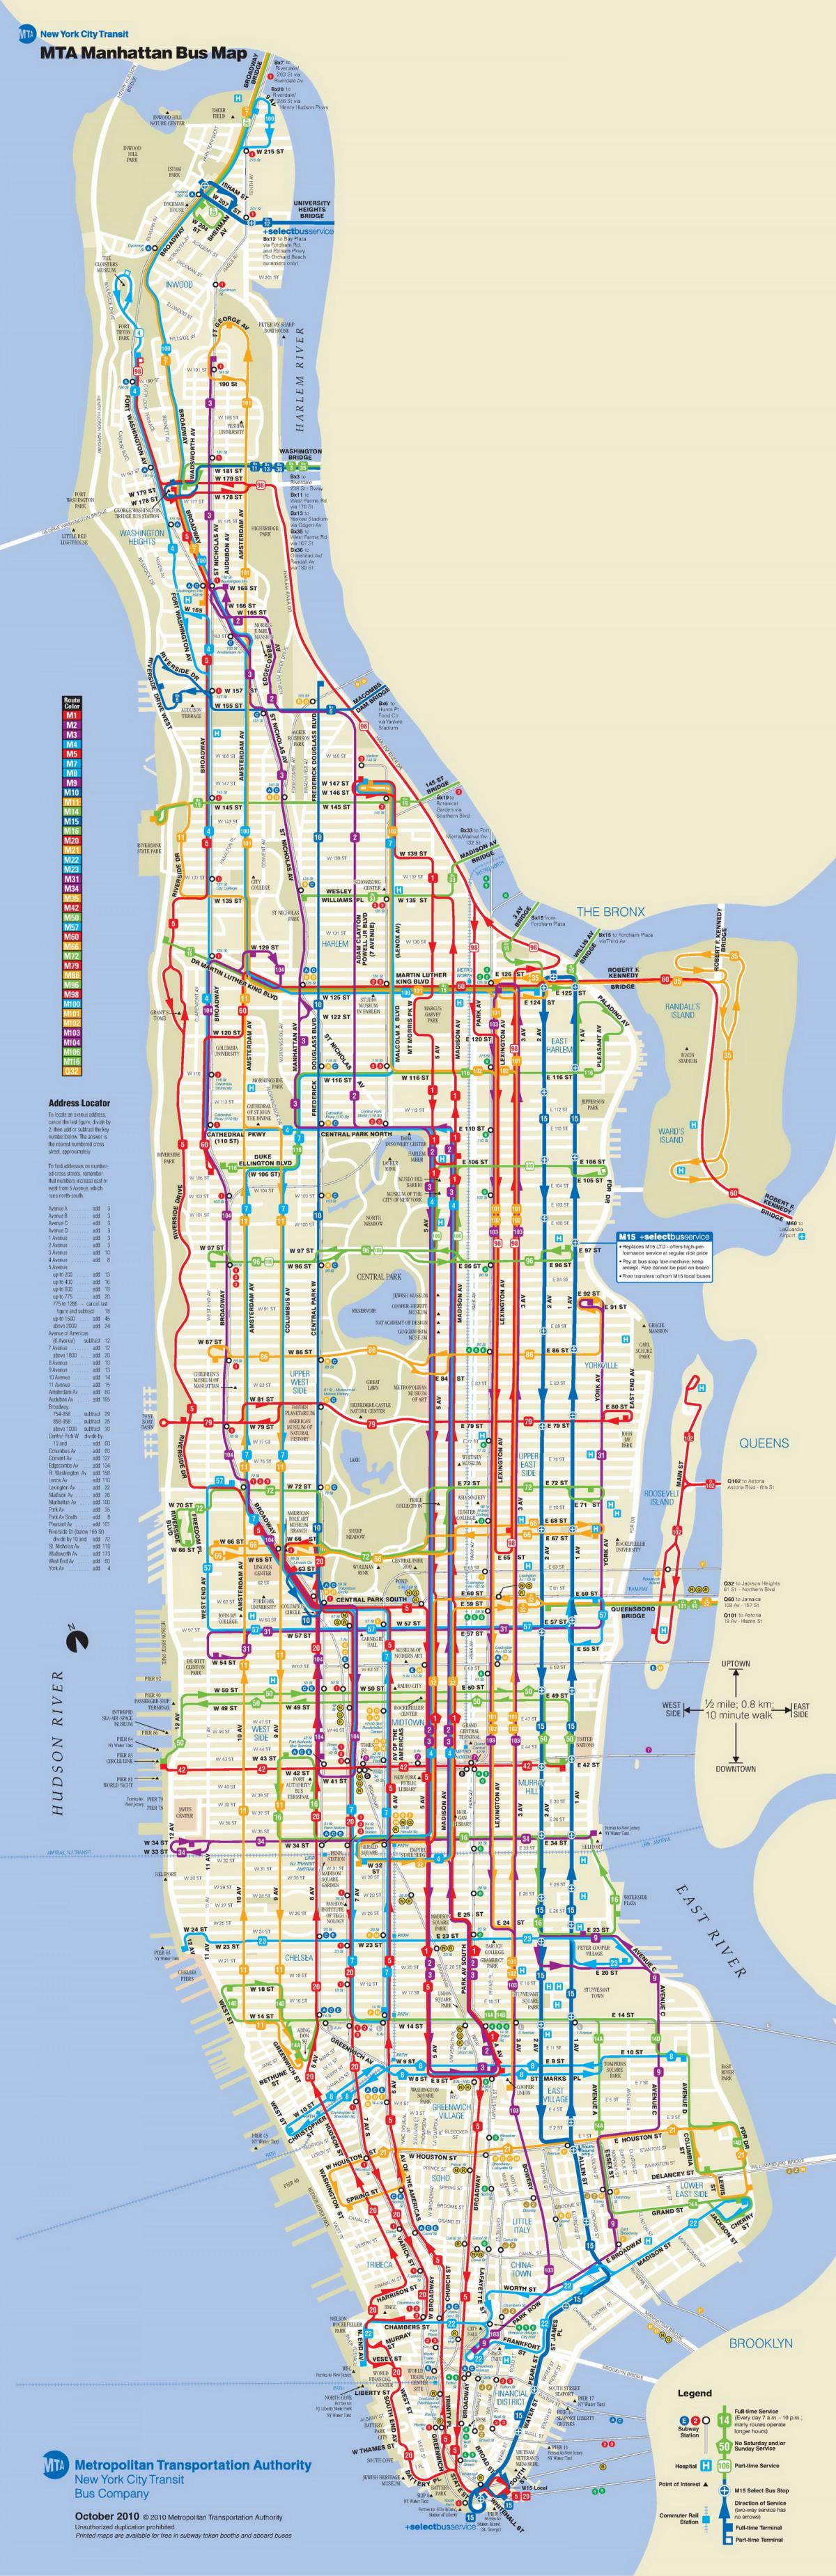 Manhattan bus kaart met haltes